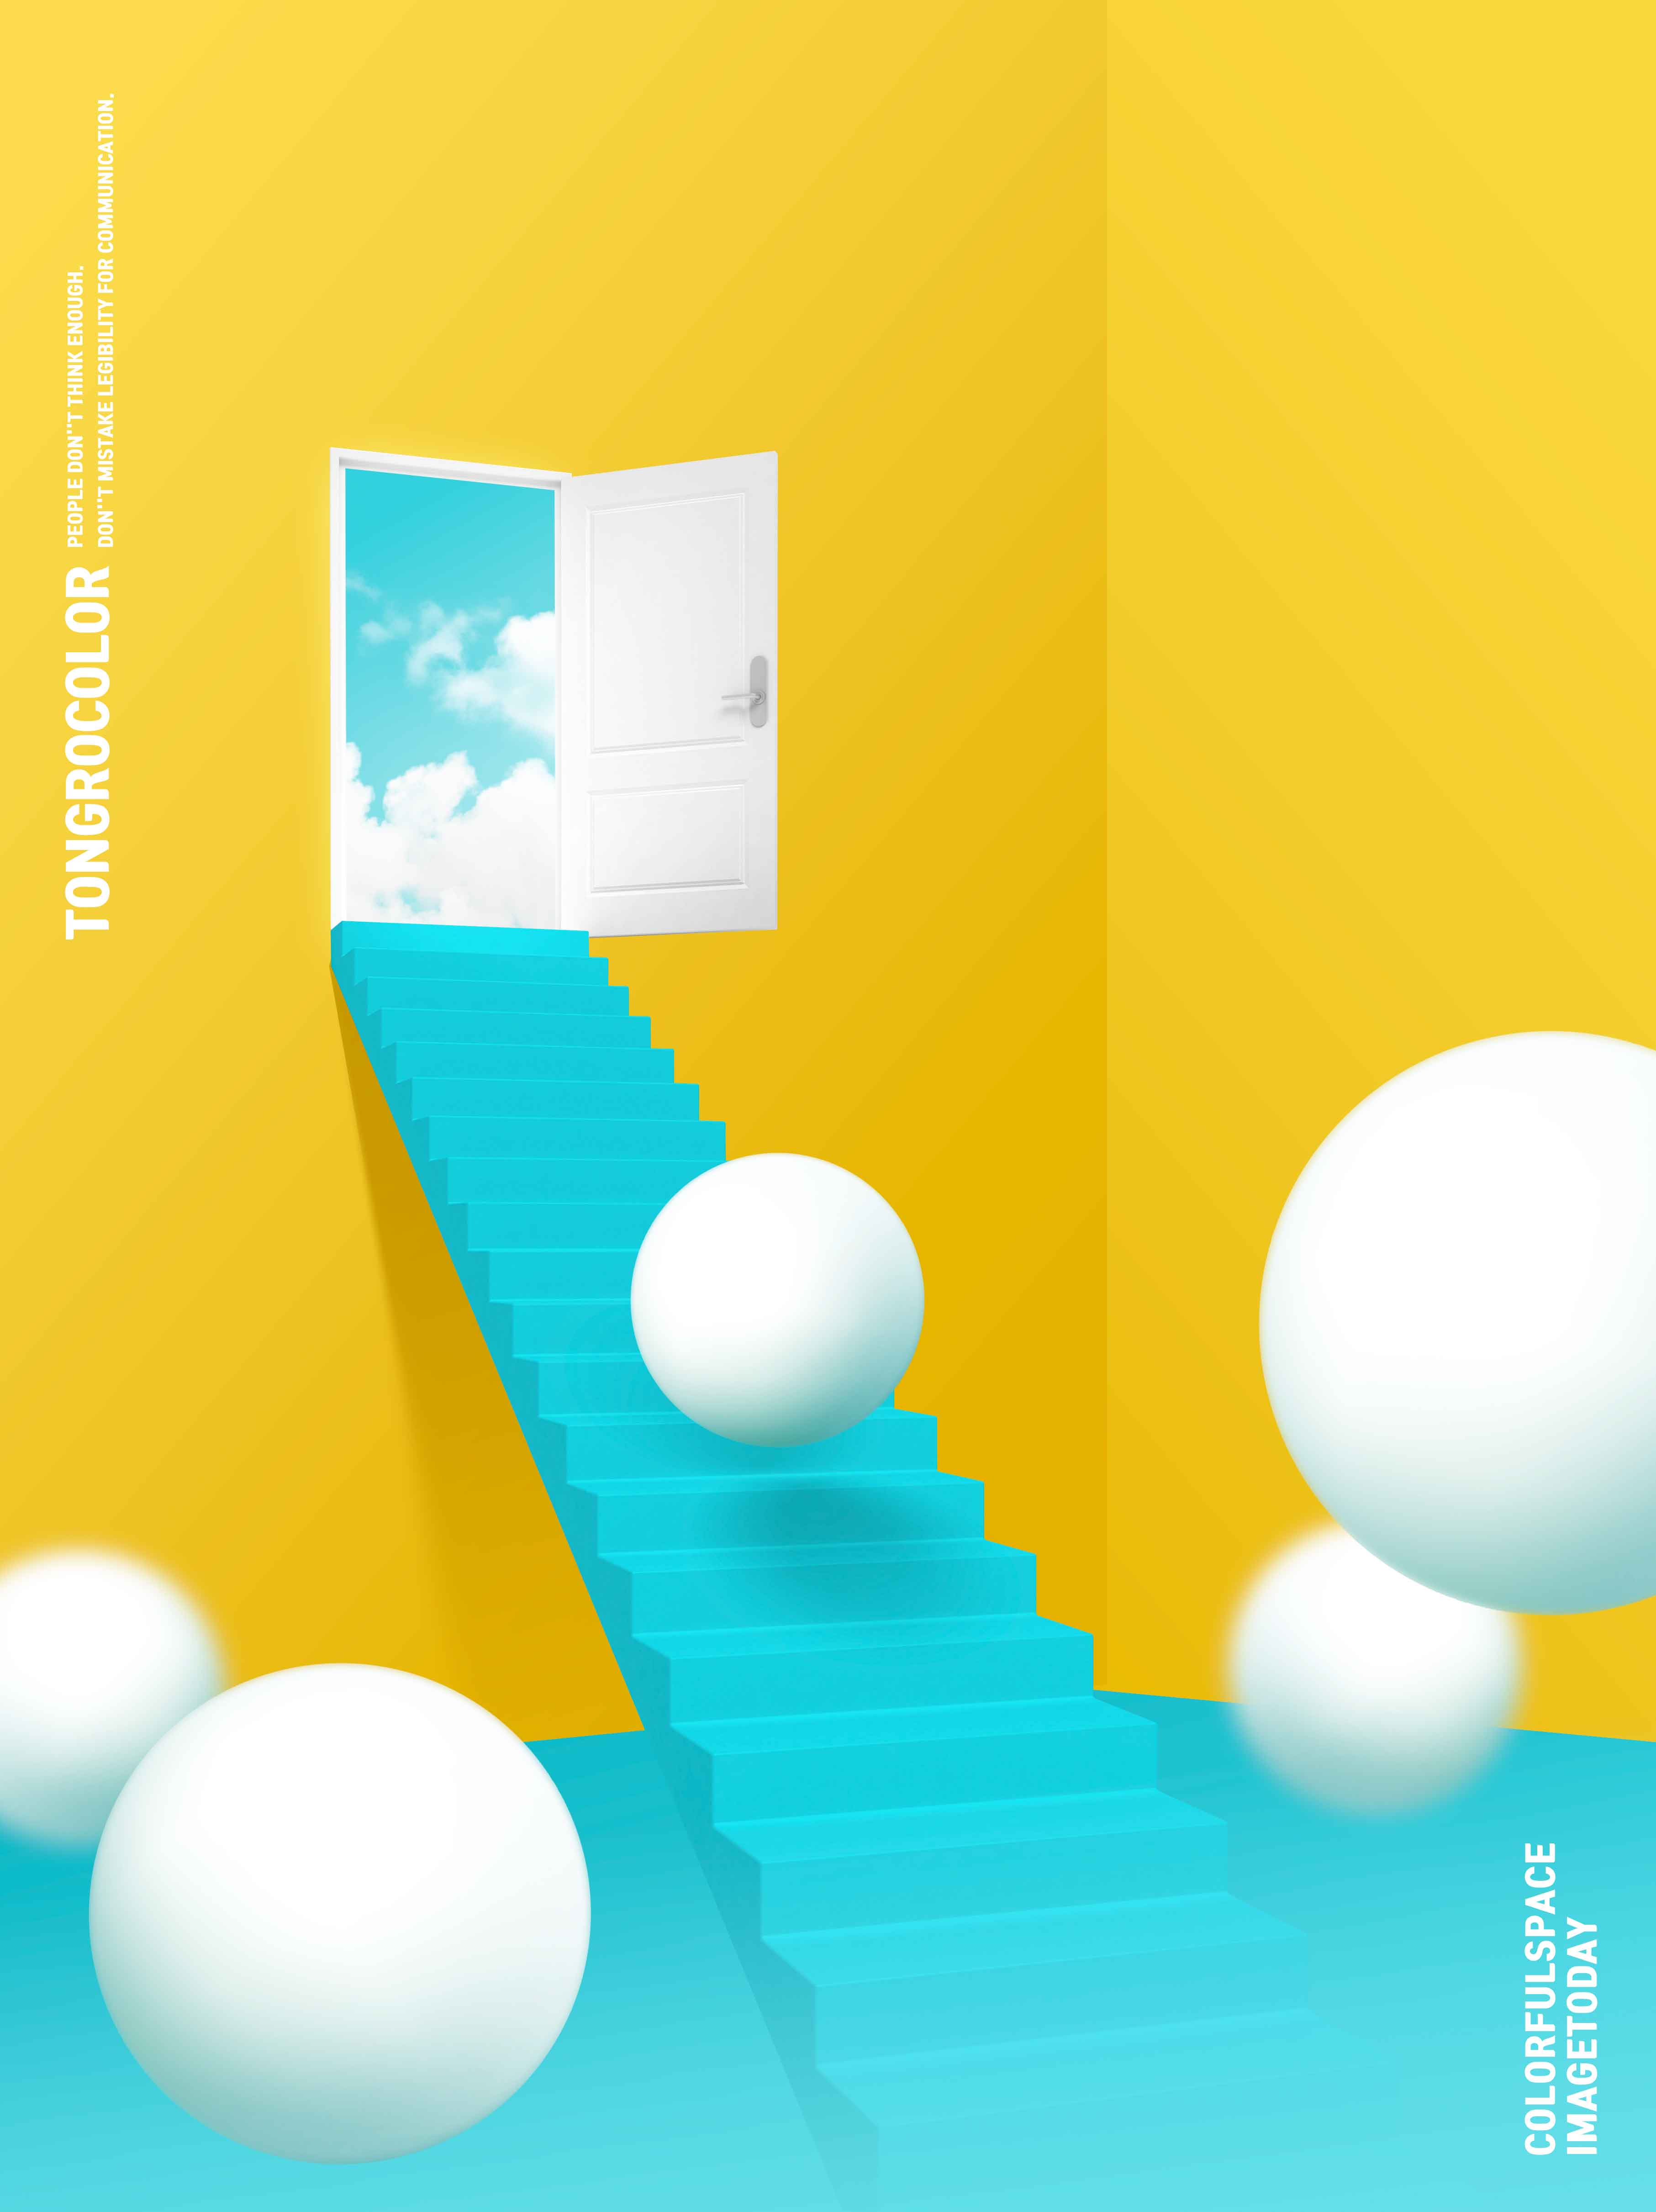 天堂阶梯抽象梦幻空间海报PSD素材素材库精选psd素材插图